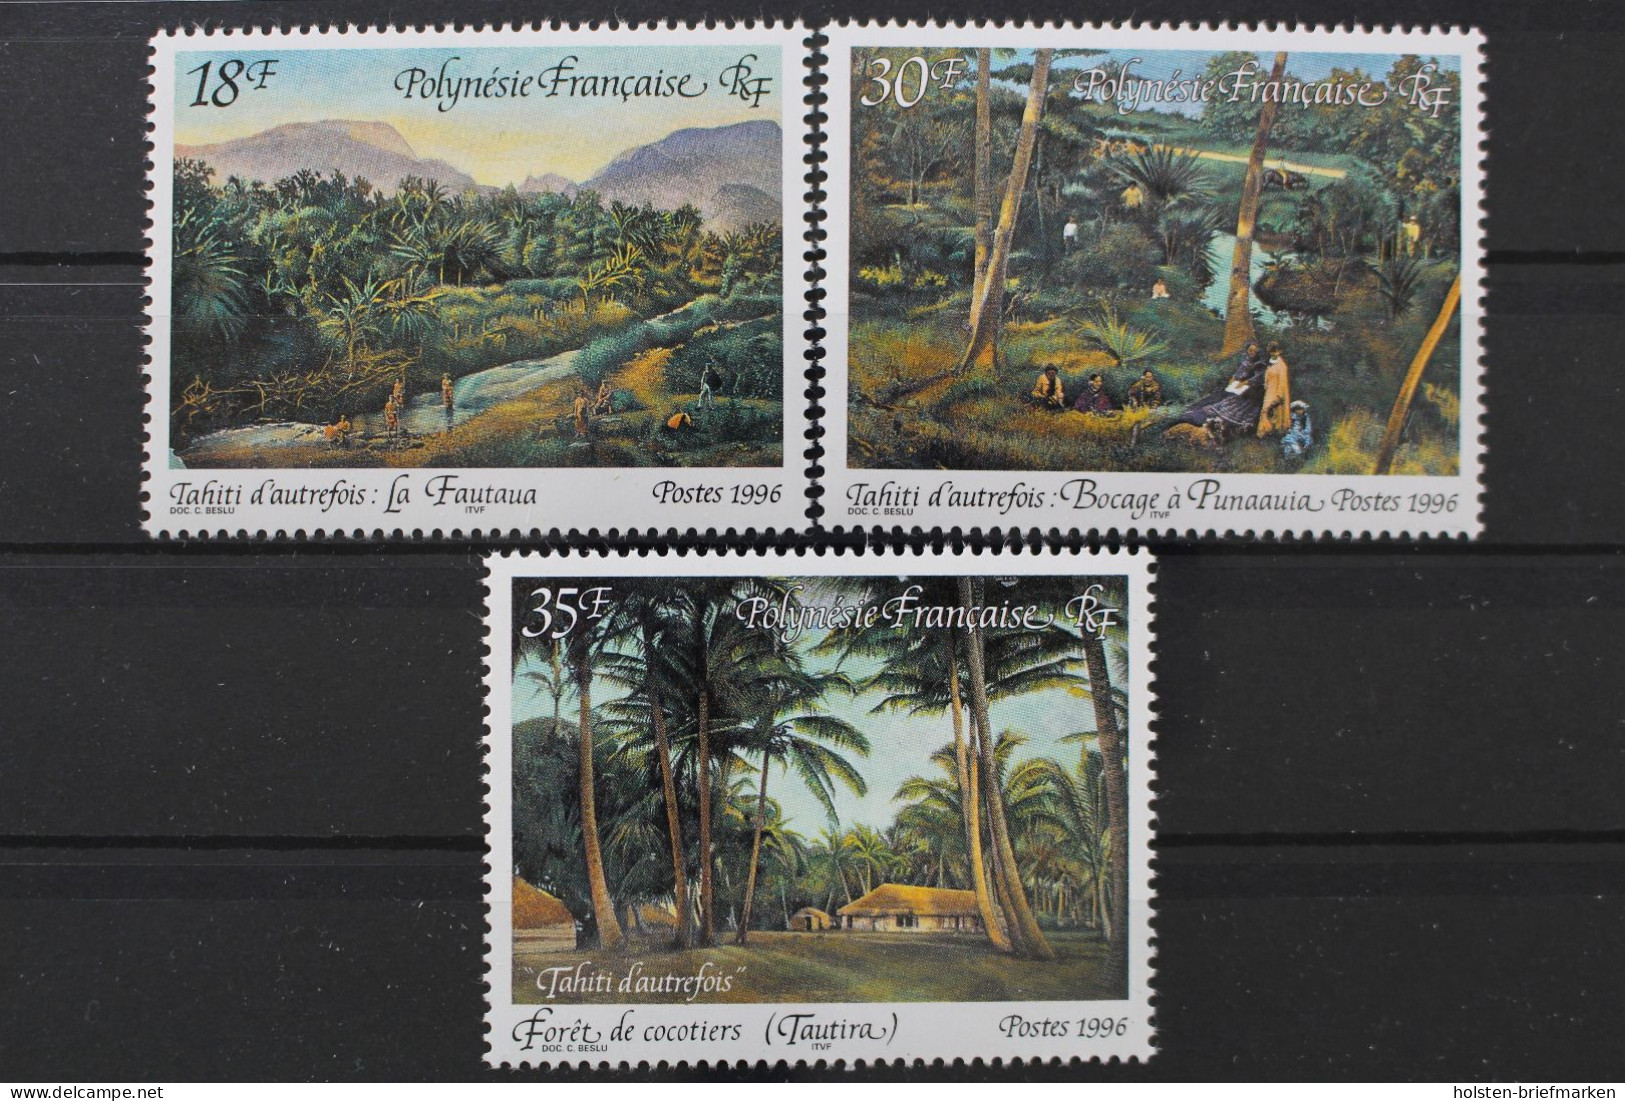 Französisch-Polynesien, MiNr. 698-700, Postfrisch - Neufs